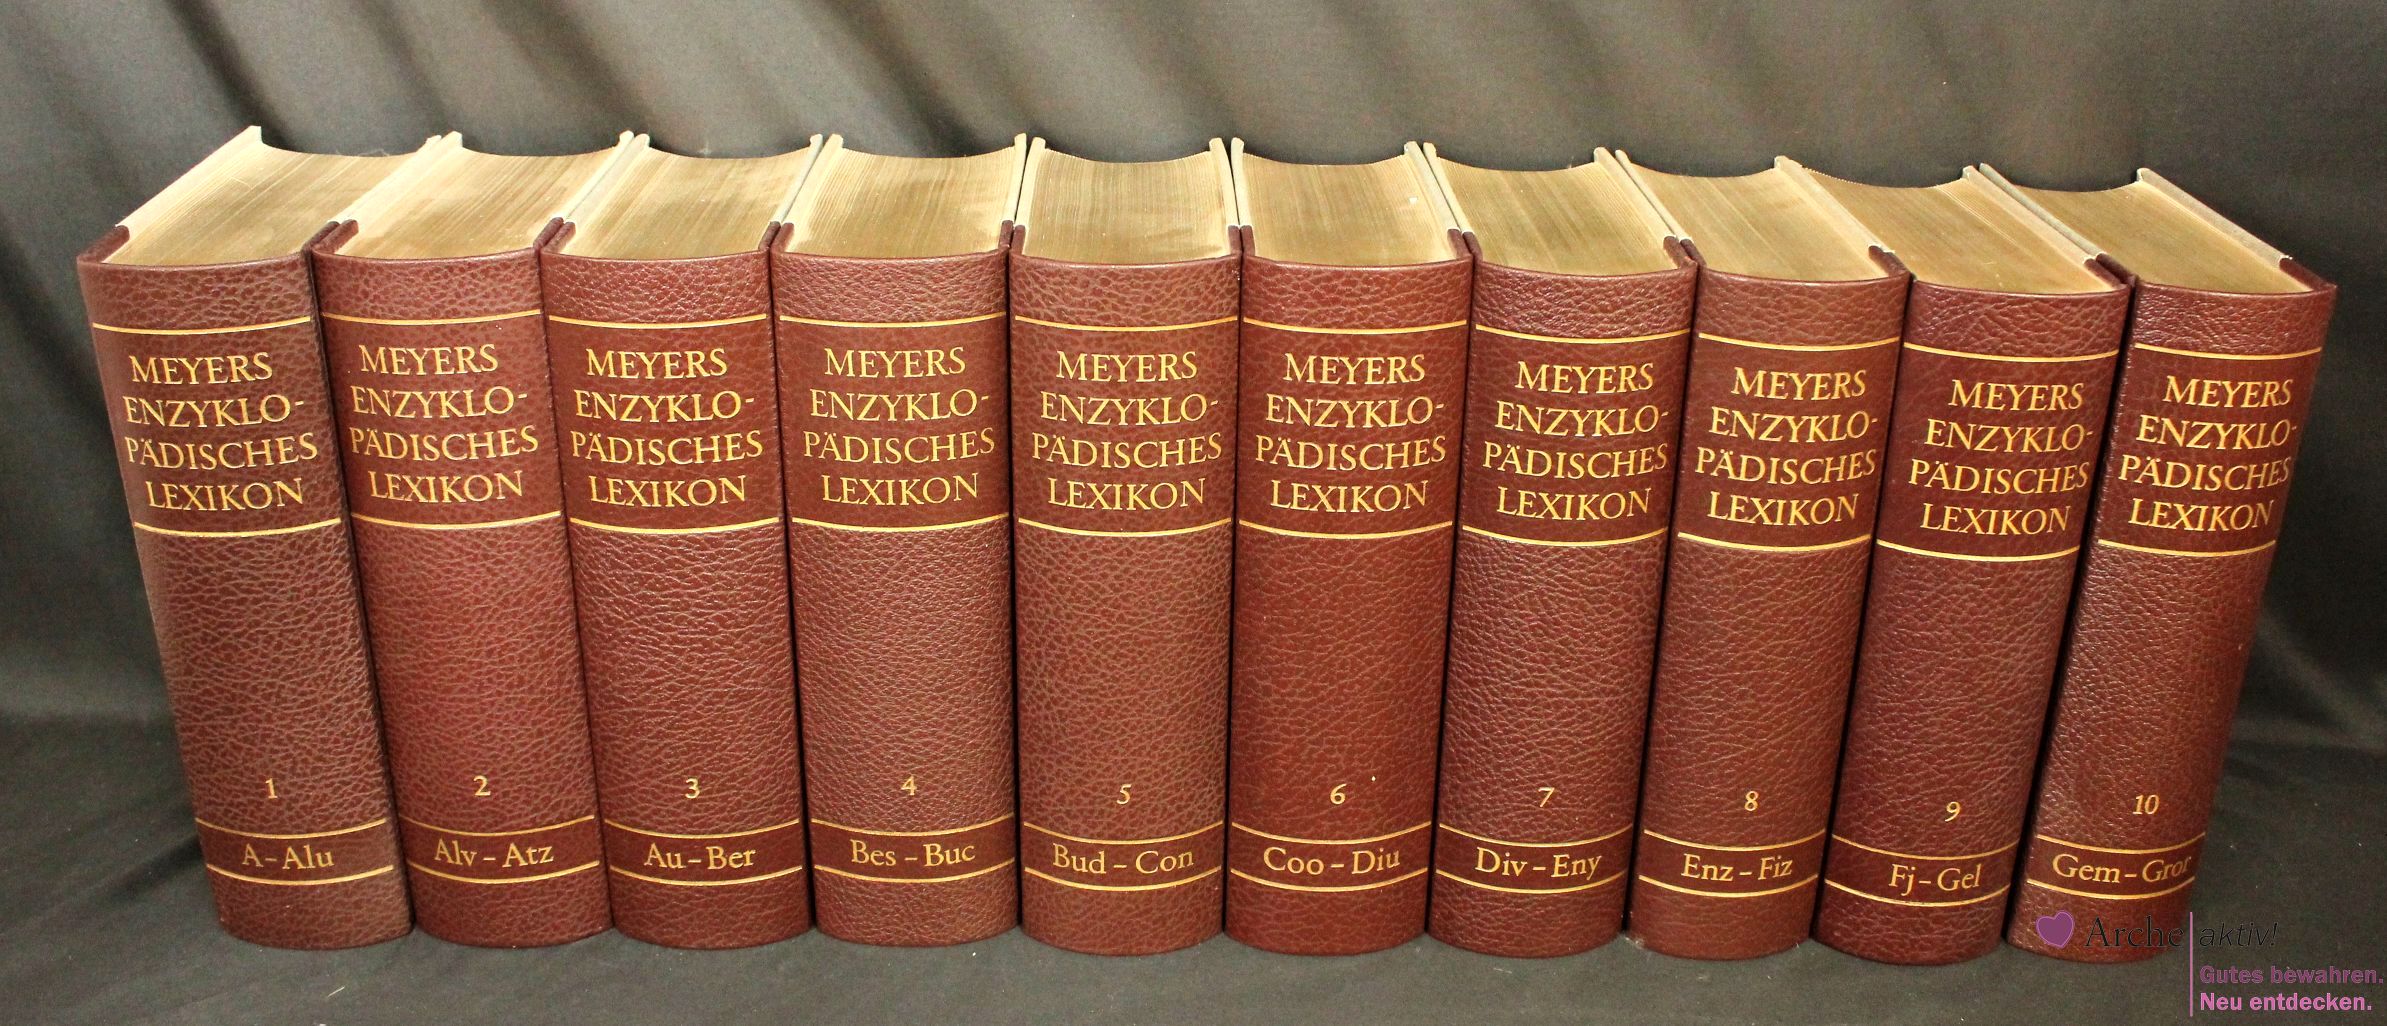 Meyers Enzyklopädisches Lexikon in 25 Bänden A-Z und Band 26 Nachträge, gebraucht